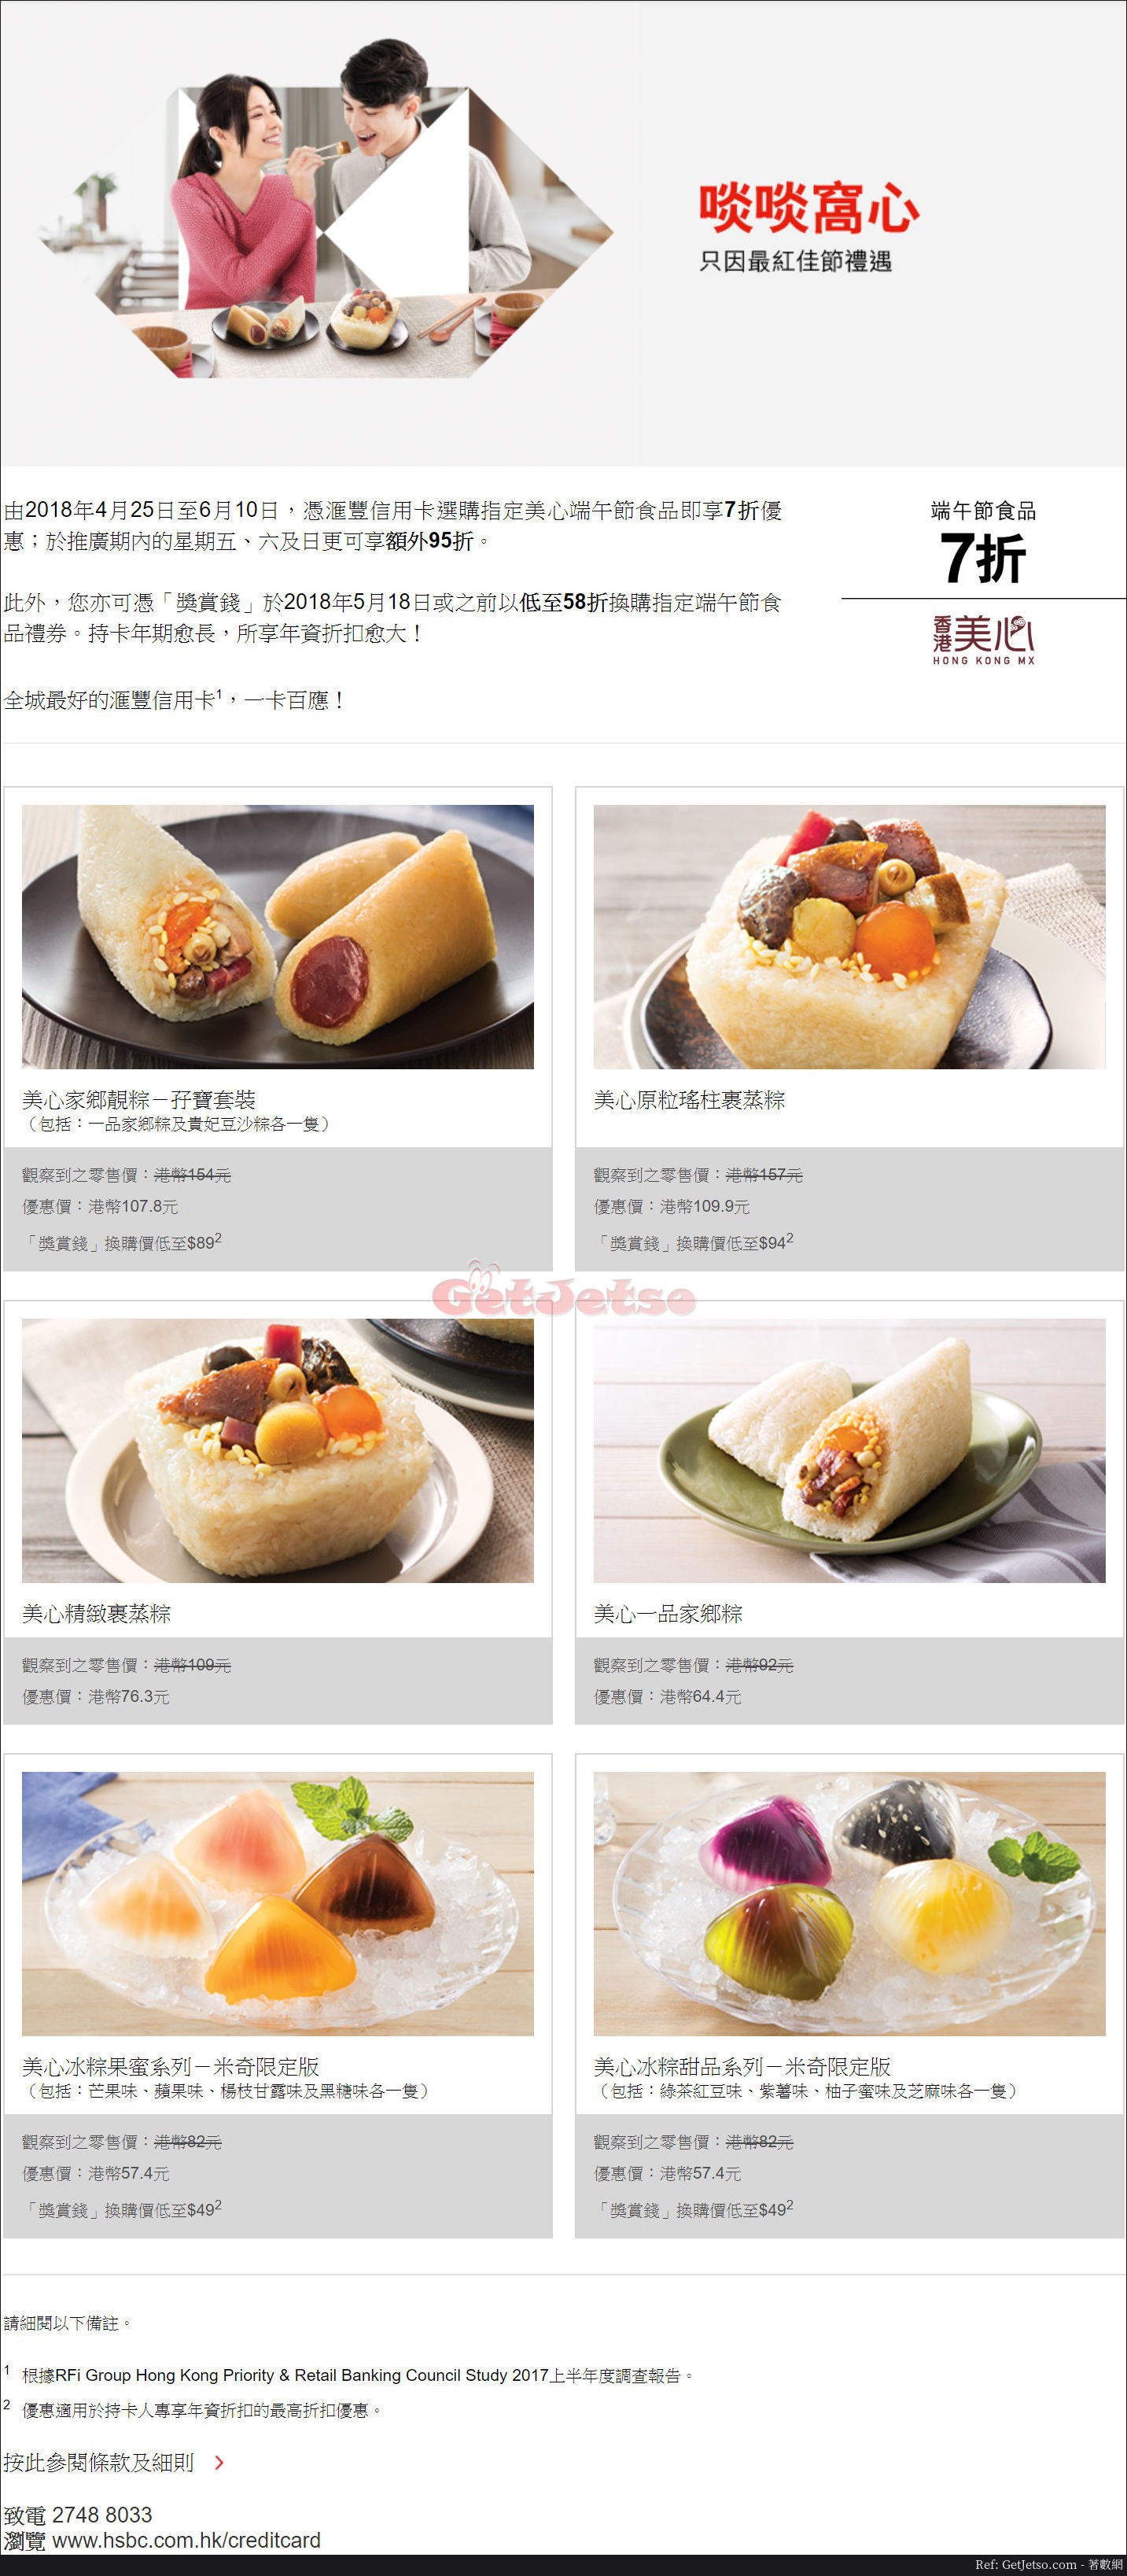 美心端午節美食7折優惠@滙豐信用卡(至18年6月10日)圖片1